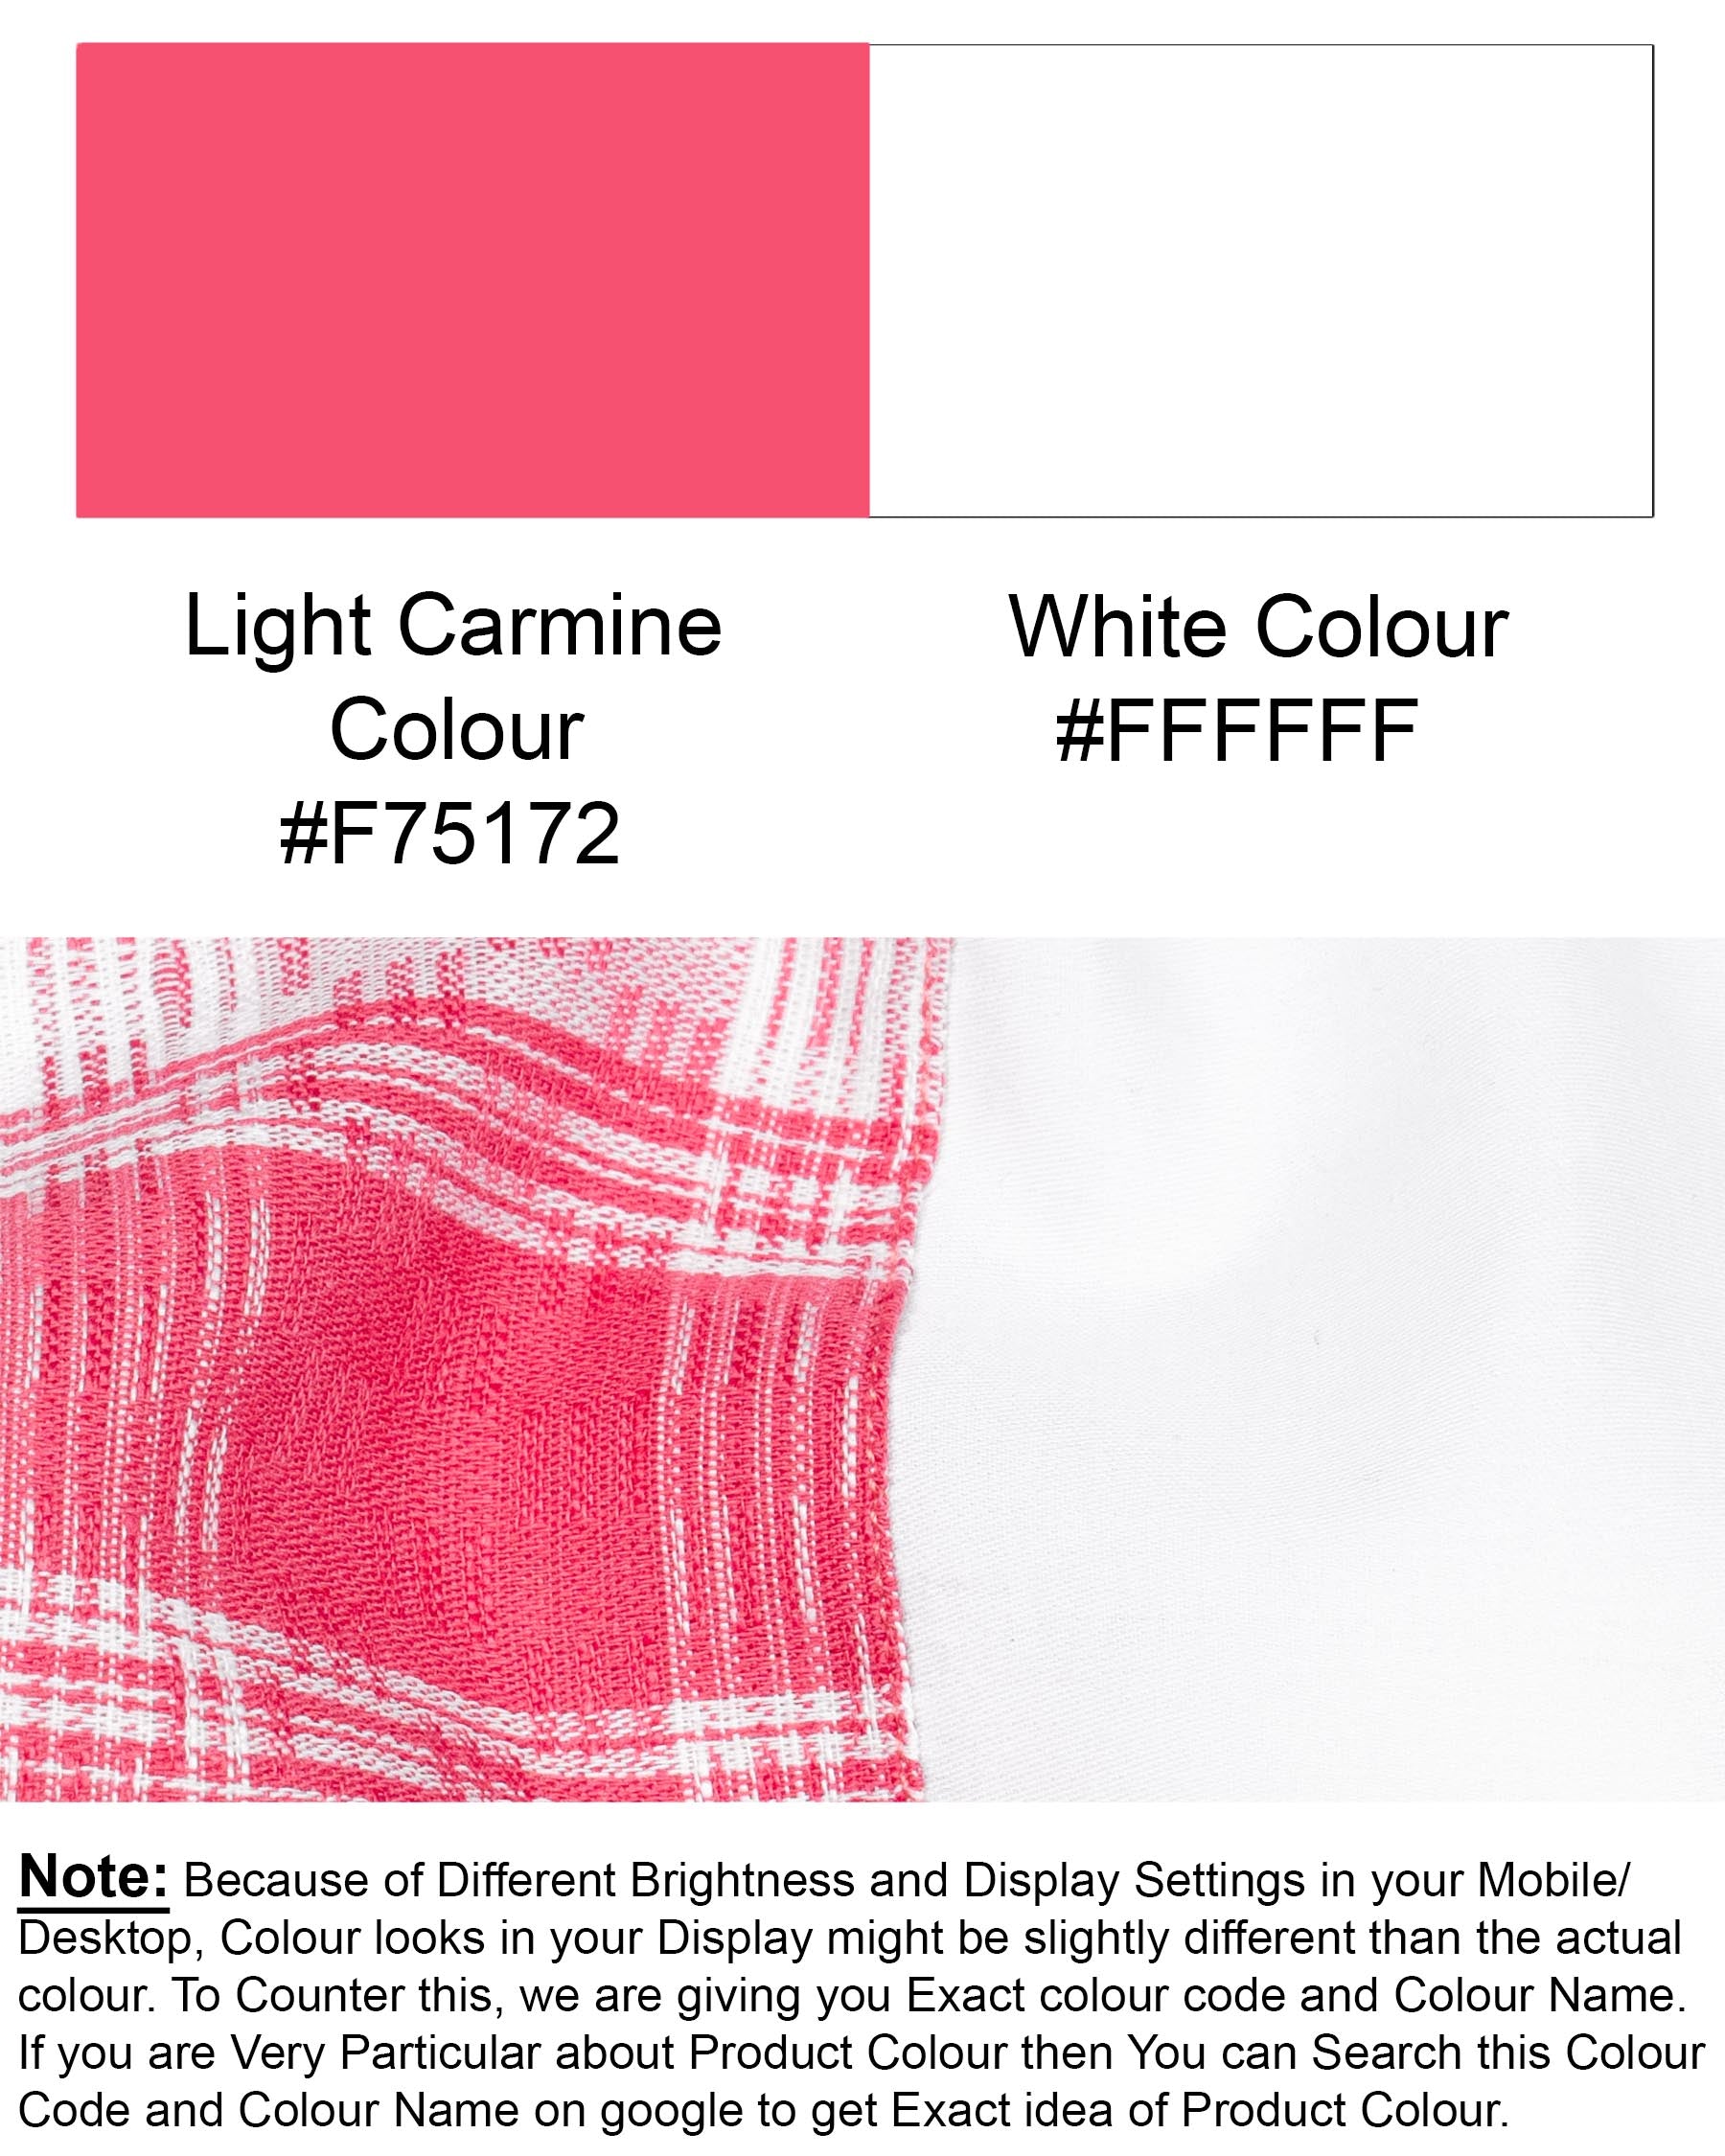  Light Carmine Plaid with Bright White Twill Premium Cotton Designer Shirt 6932-D11-38,6932-D11-38,6932-D11-39,6932-D11-39,6932-D11-40,6932-D11-40,6932-D11-42,6932-D11-42,6932-D11-44,6932-D11-44,6932-D11-46,6932-D11-46,6932-D11-48,6932-D11-48,6932-D11-50,6932-D11-50,6932-D11-52,6932-D11-52